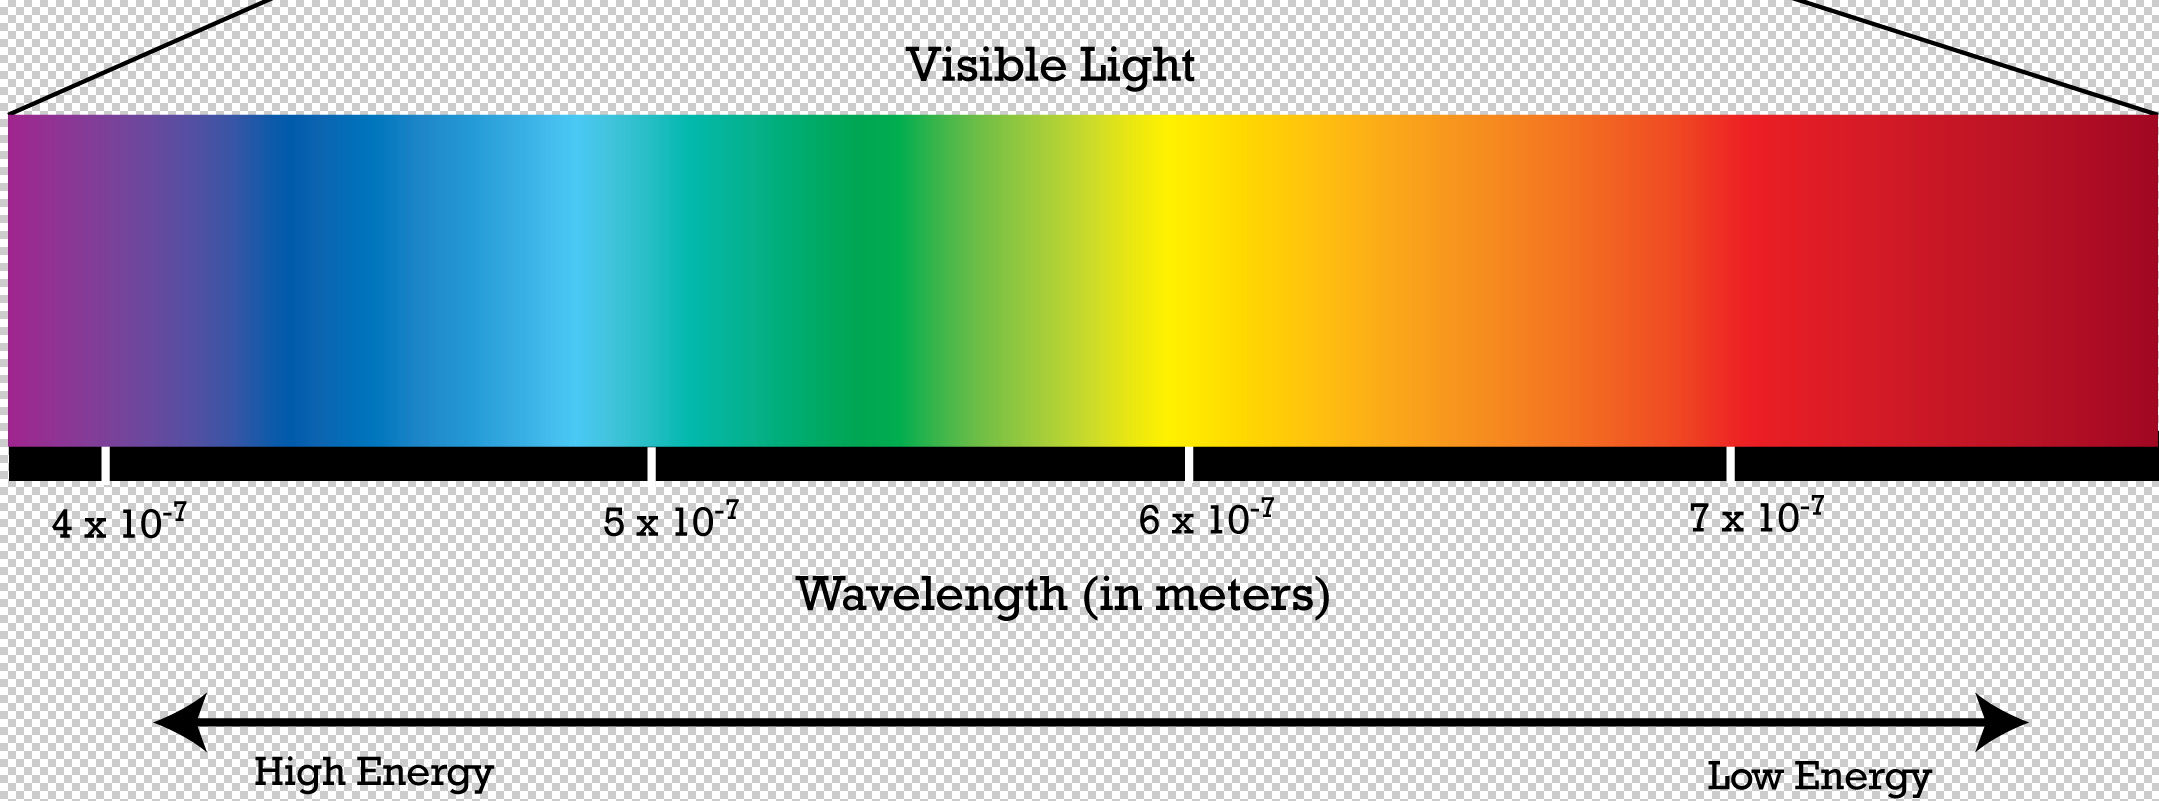 Расположите в порядке увеличения длины волны. Light Spectrum. Видимое излучение спектр. Visible Light Spectrum. Длина волны.